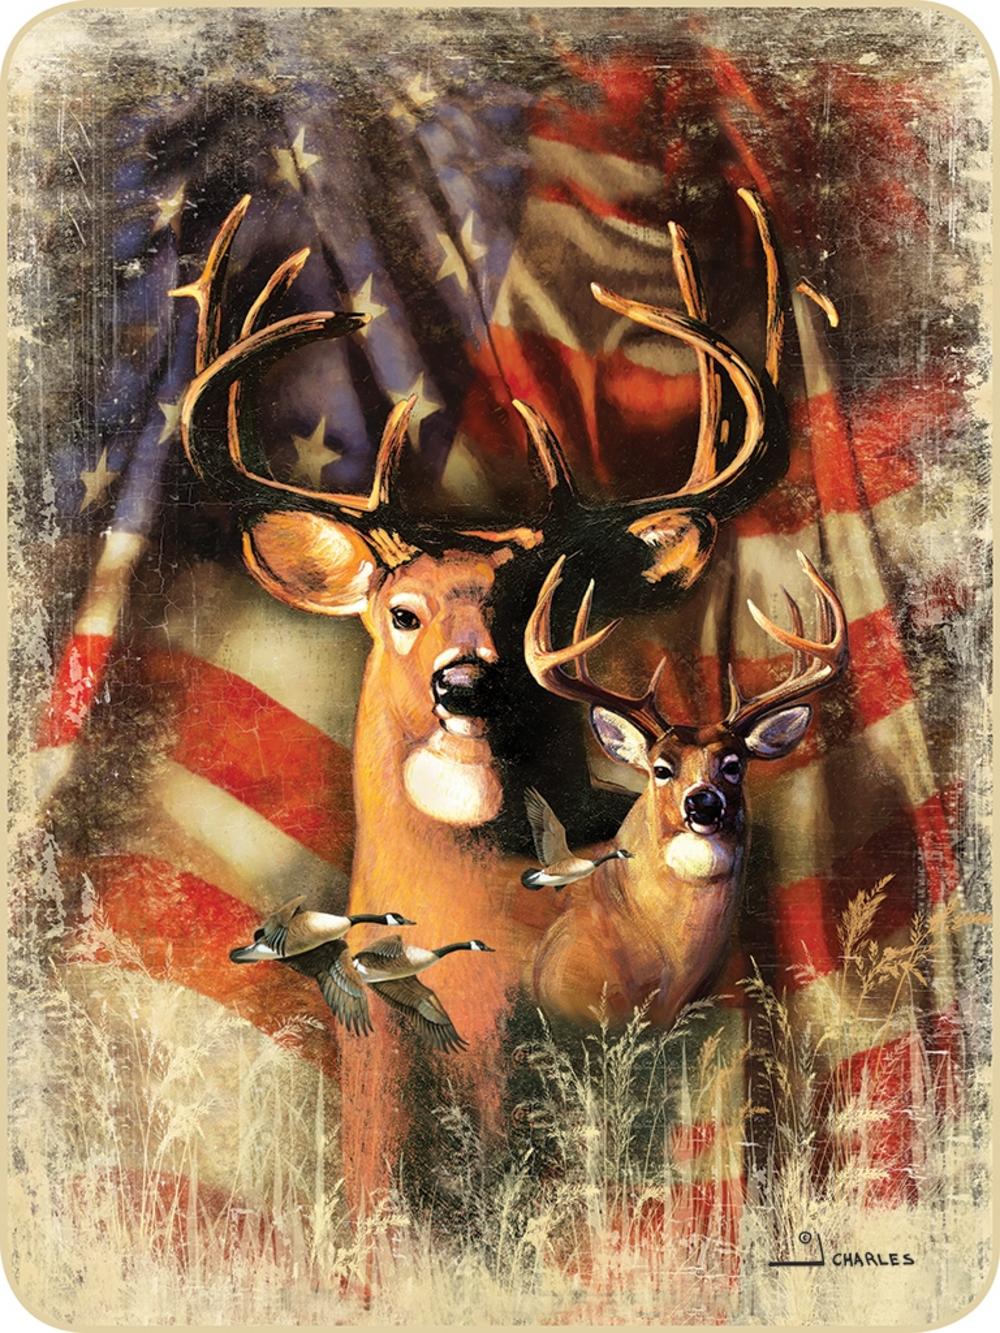 Pin by 𝕁𝕦𝕝𝕚𝕒 𝕄𝕒𝕥𝕙𝕖𝕣𝕝𝕪 on Deer mullet pfp  Deer wallpaper  American flag wallpaper American flag wood